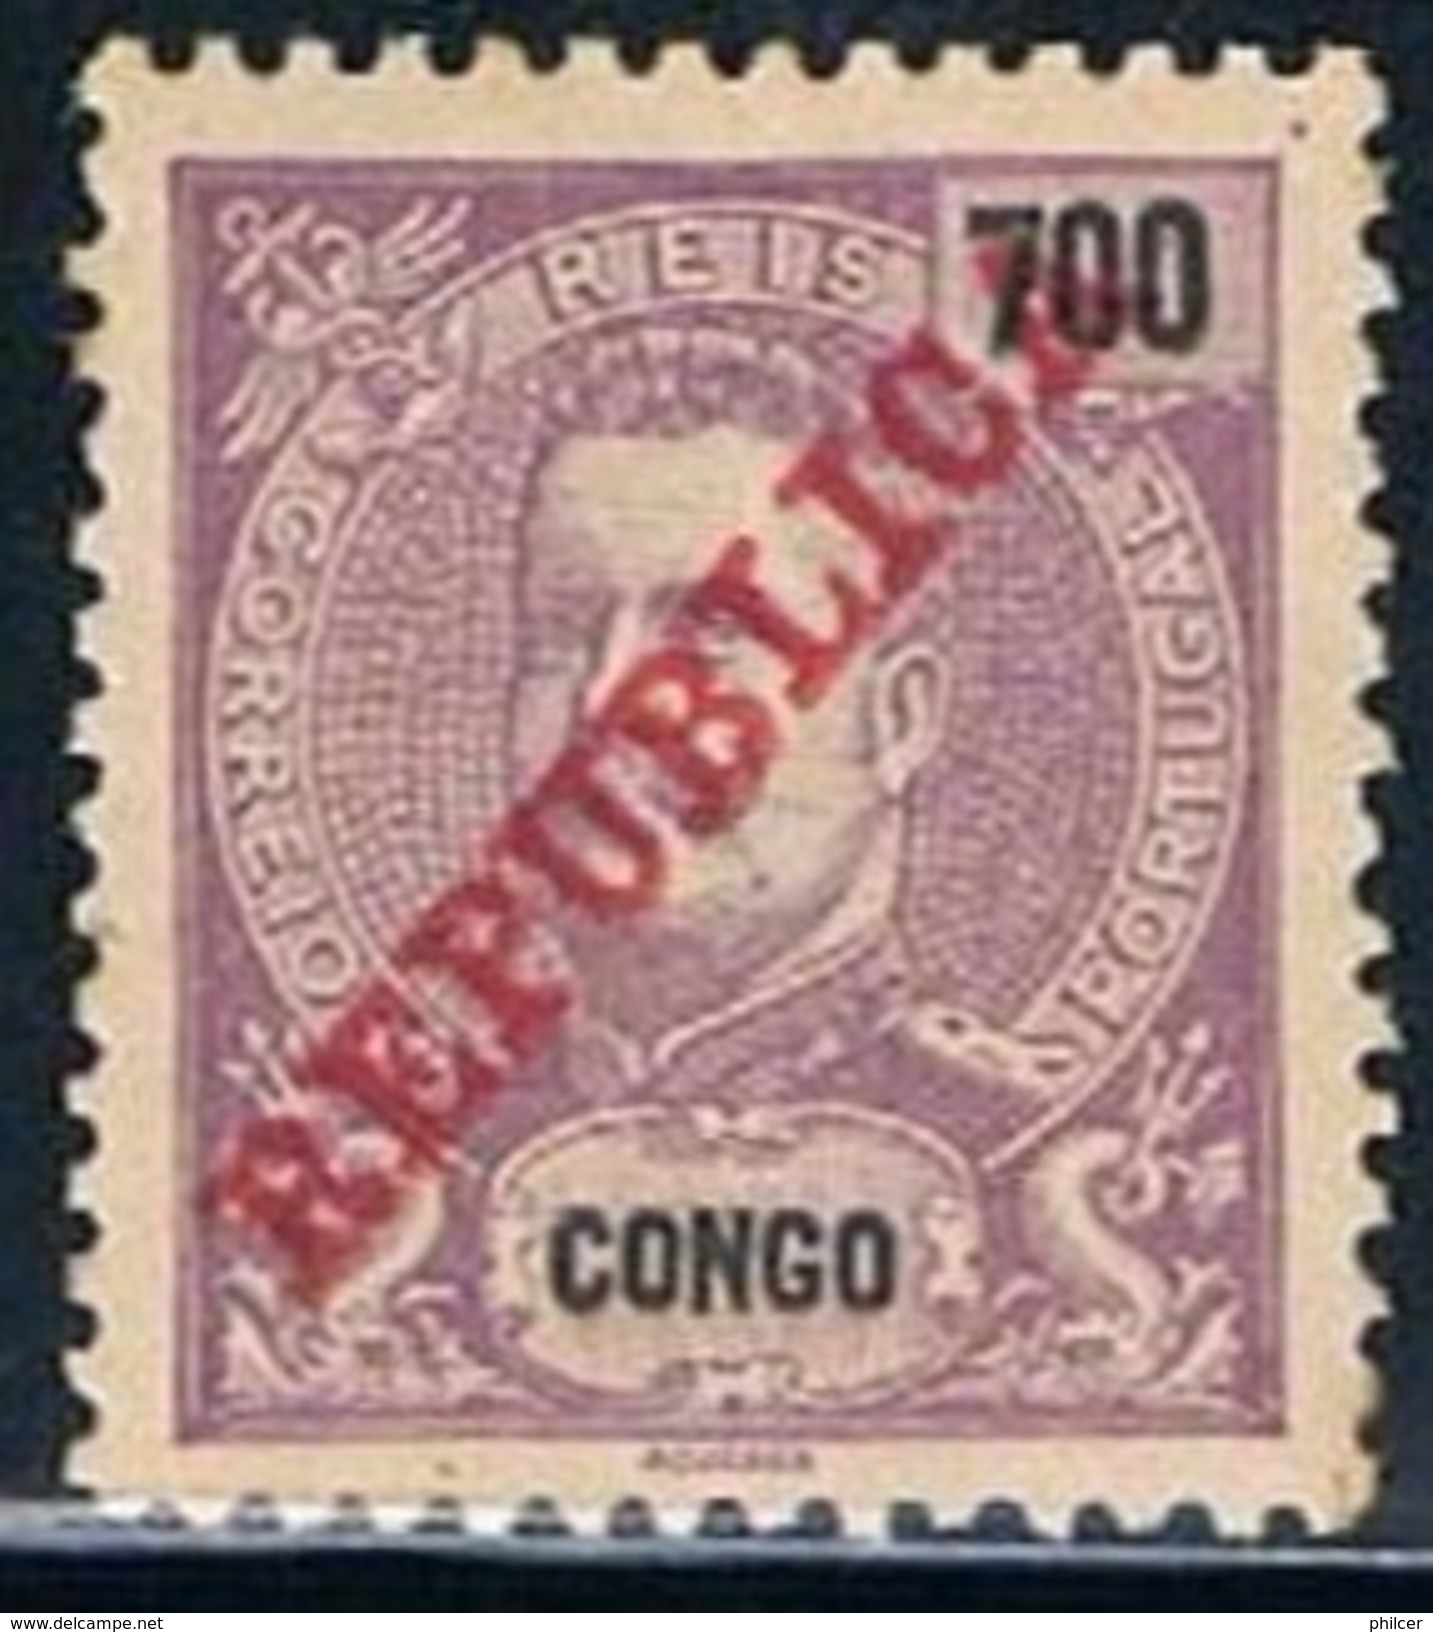 Congo, 1911, # 74, MH - Congo Portuguesa